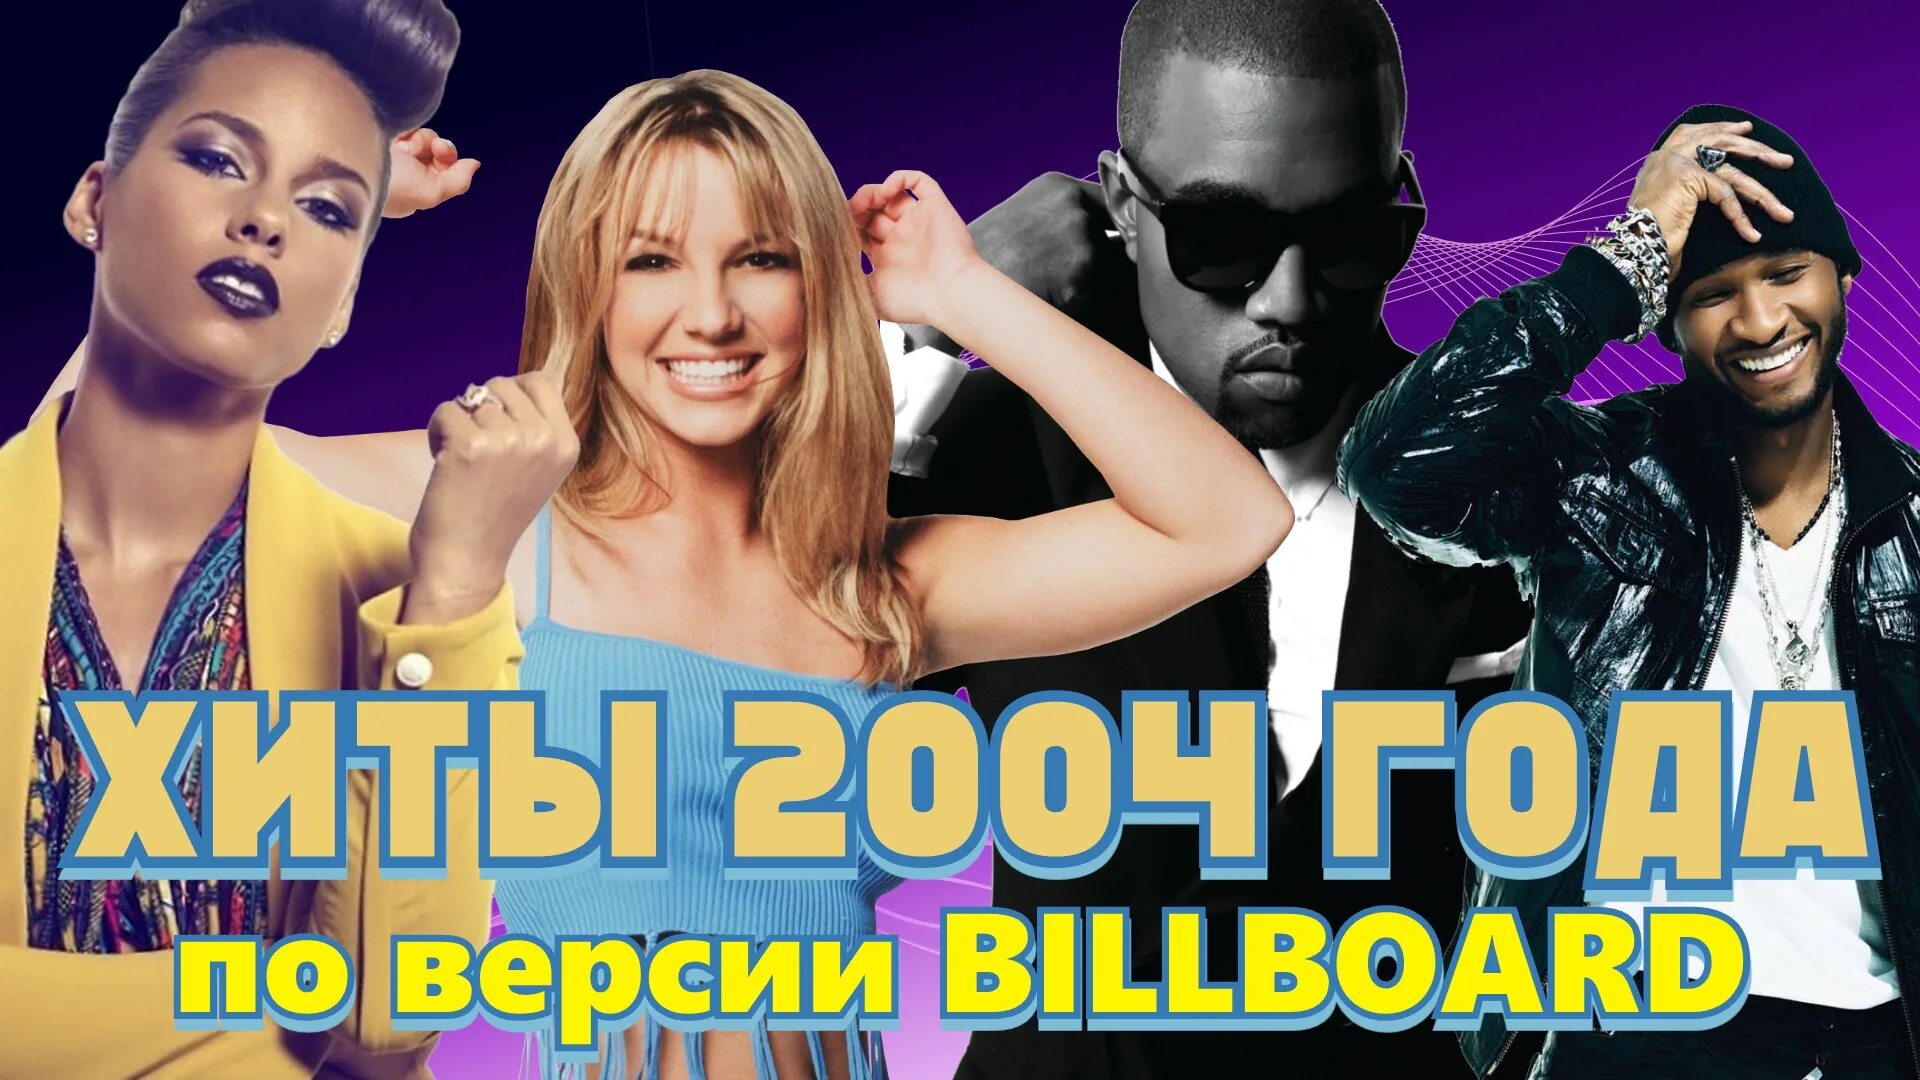 Песня 18 00. Хиты 2004 года зарубежные. Евро хиты 2004 год. Горячие хиты 2004. Диск зарубежные хиты 2004.